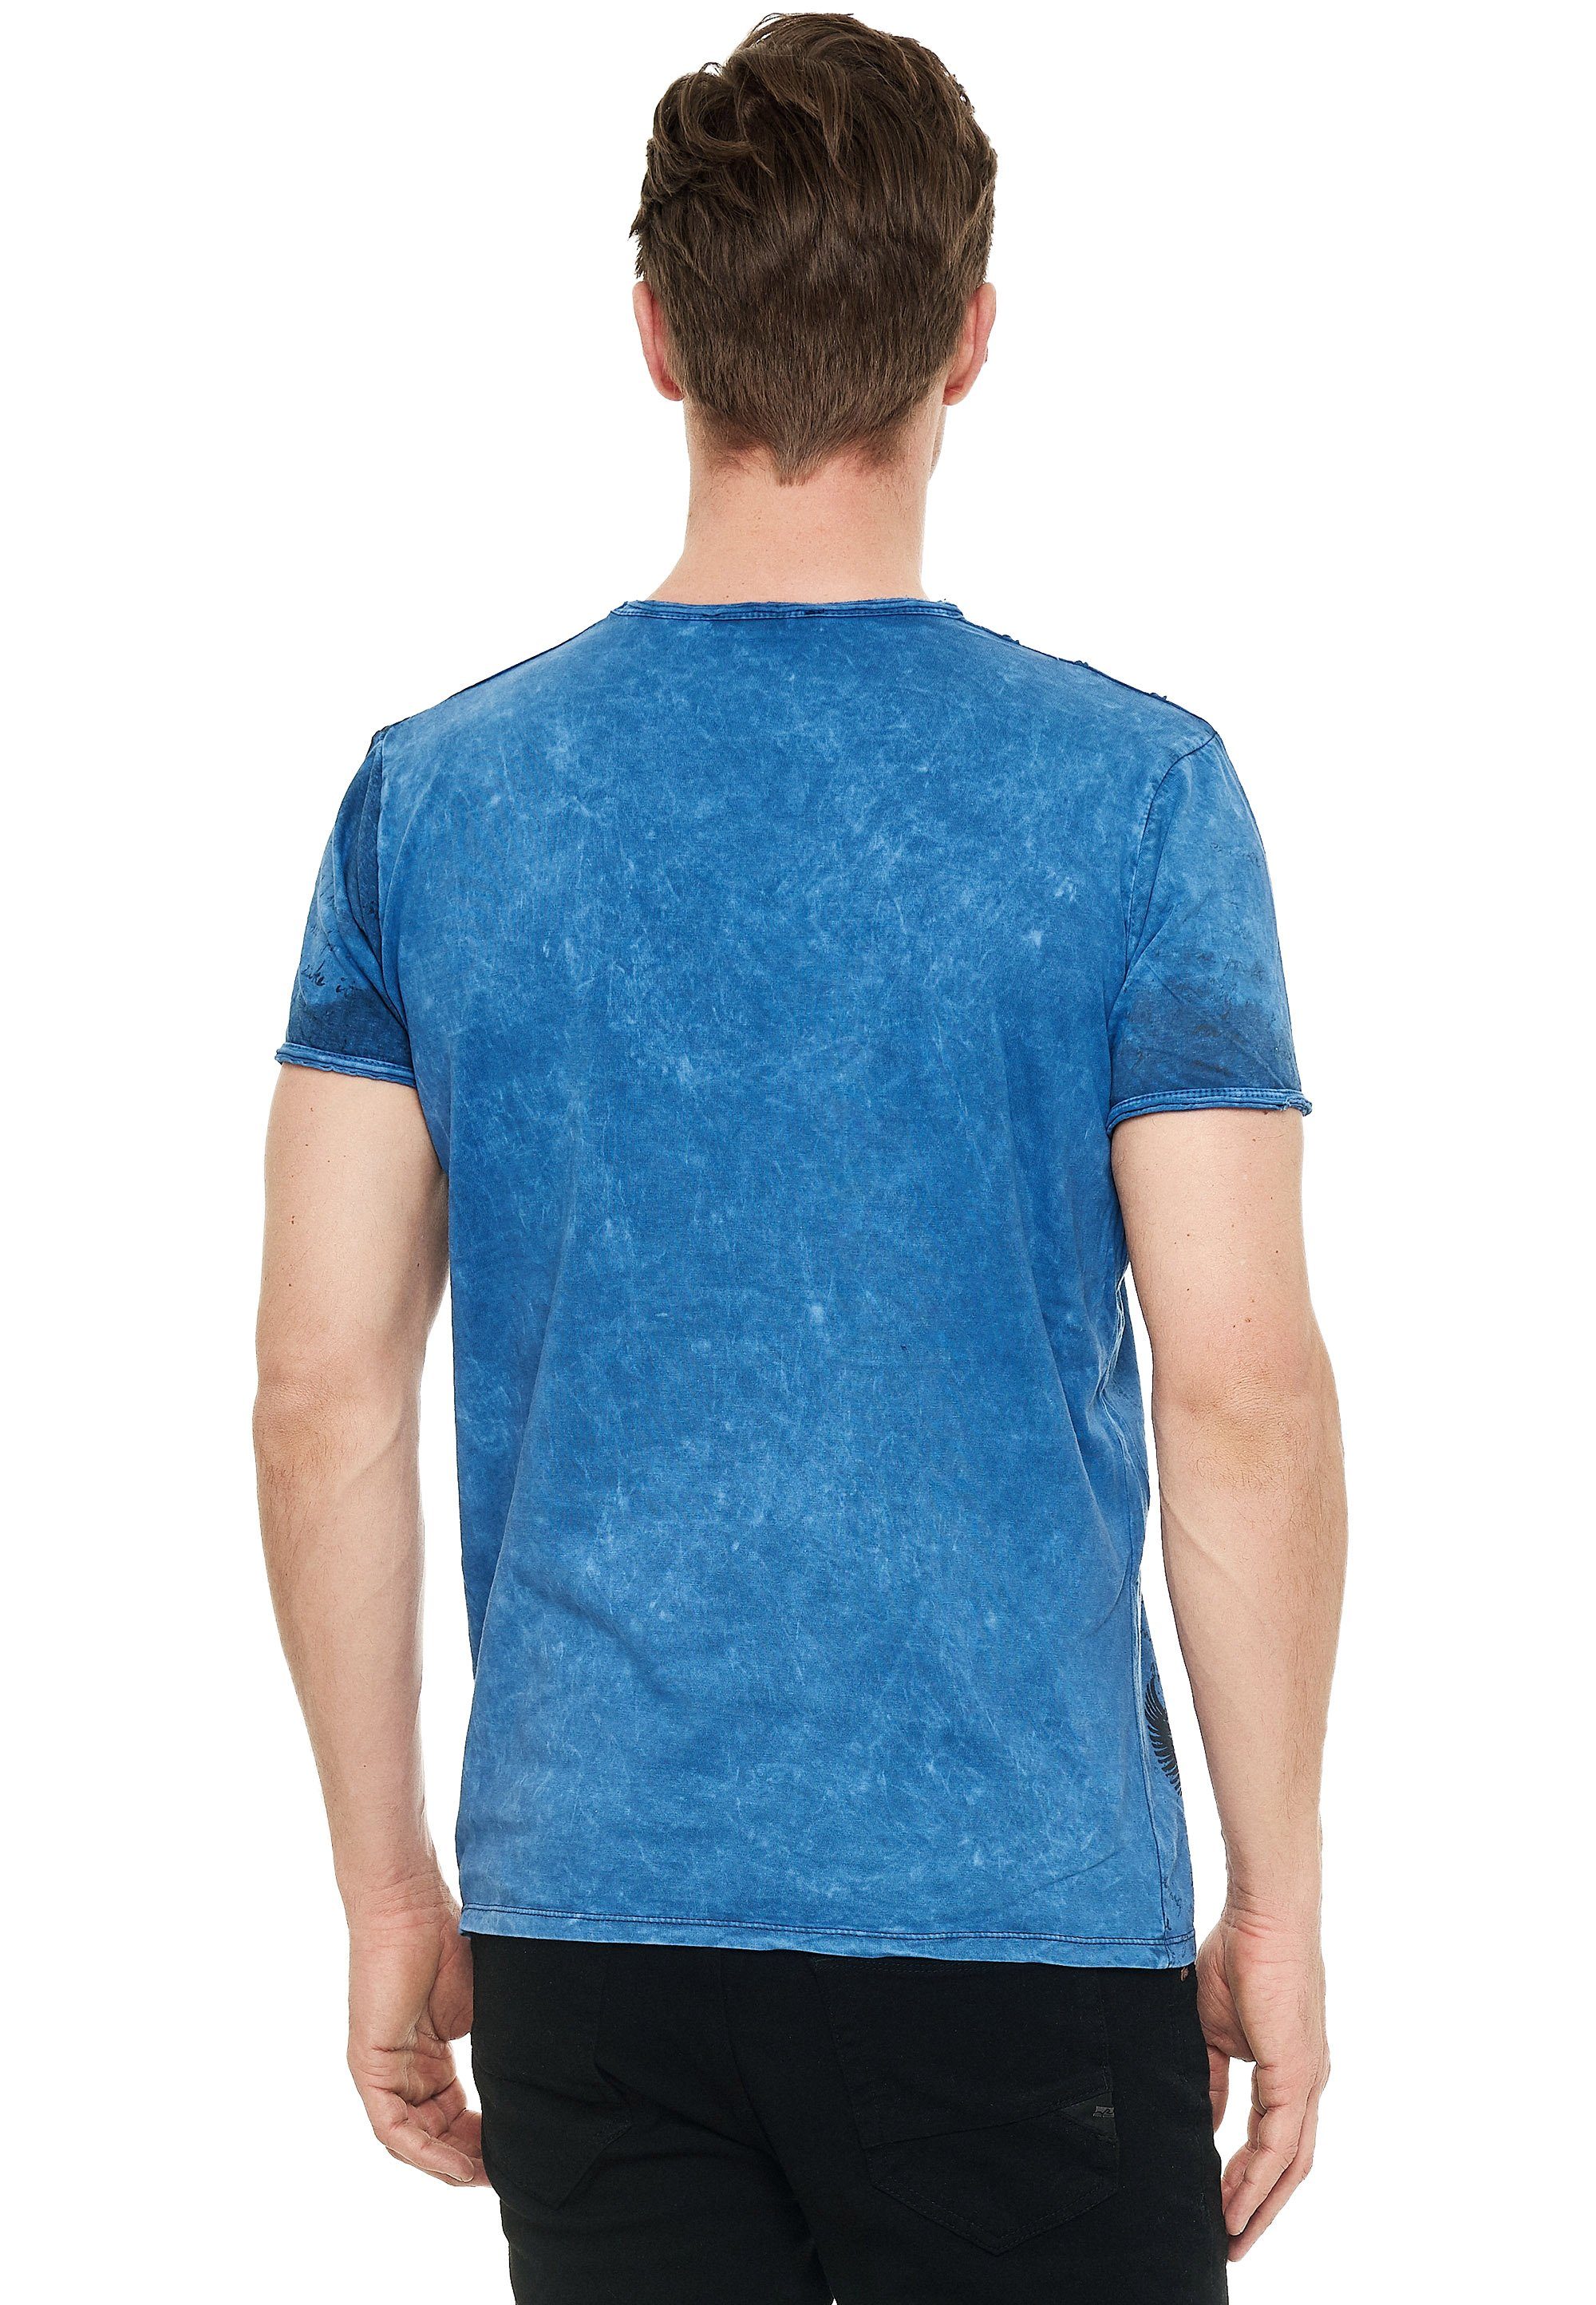 Neal blau Rusty eindrucksvollem mit Print T-Shirt